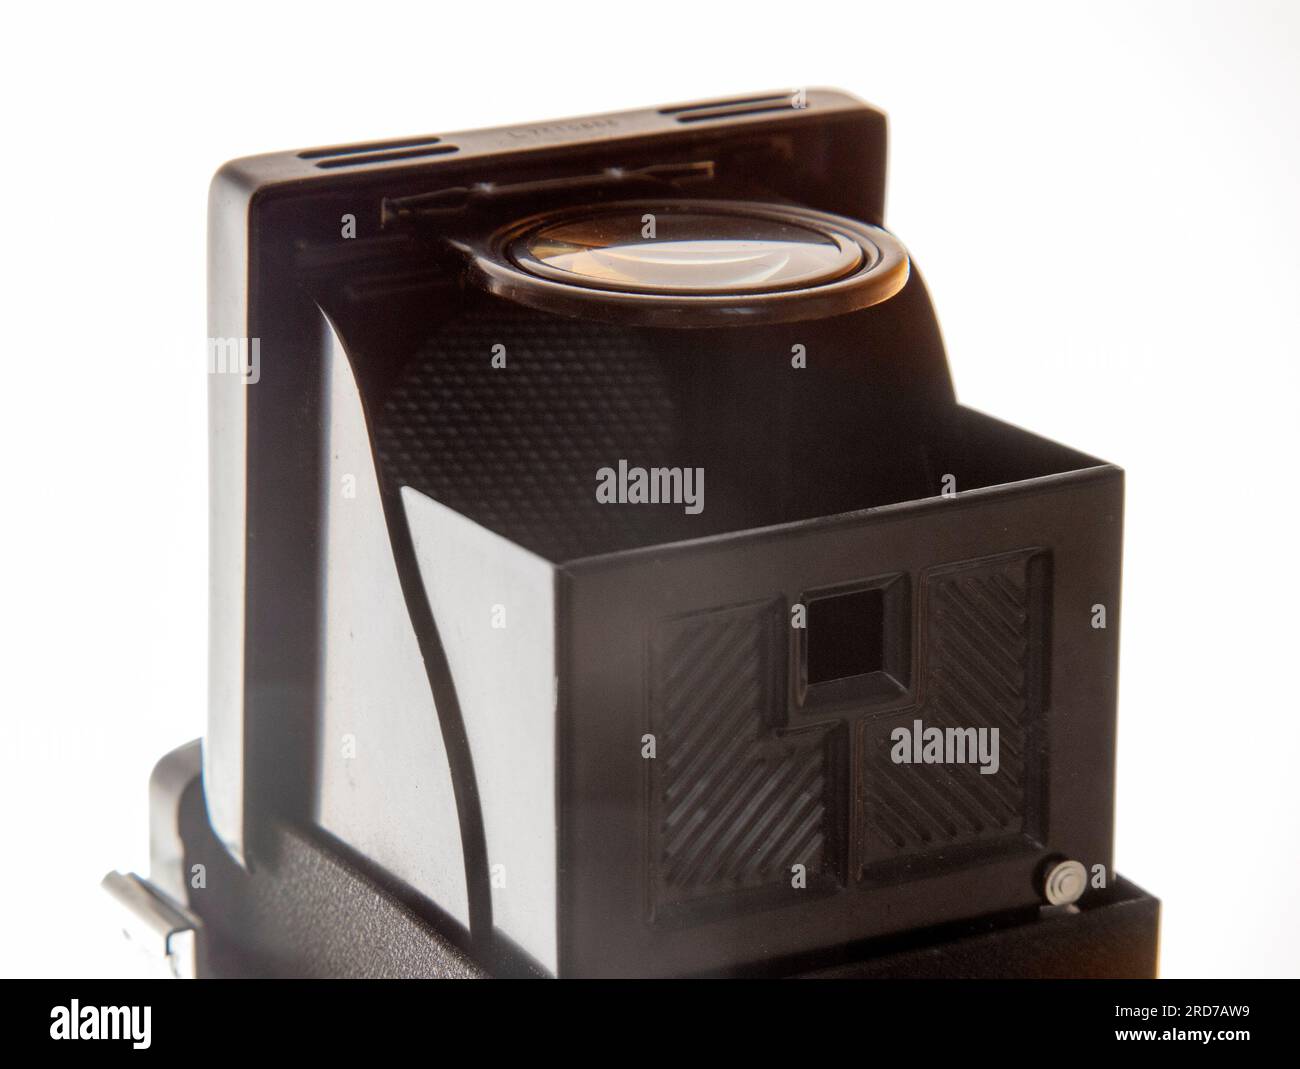 Mirino di una Yashica 24, una fotocamera tlr reflex a doppio obiettivo realizzata in Giappone intorno al 1967, con pellicola a 220°. Foto Stock